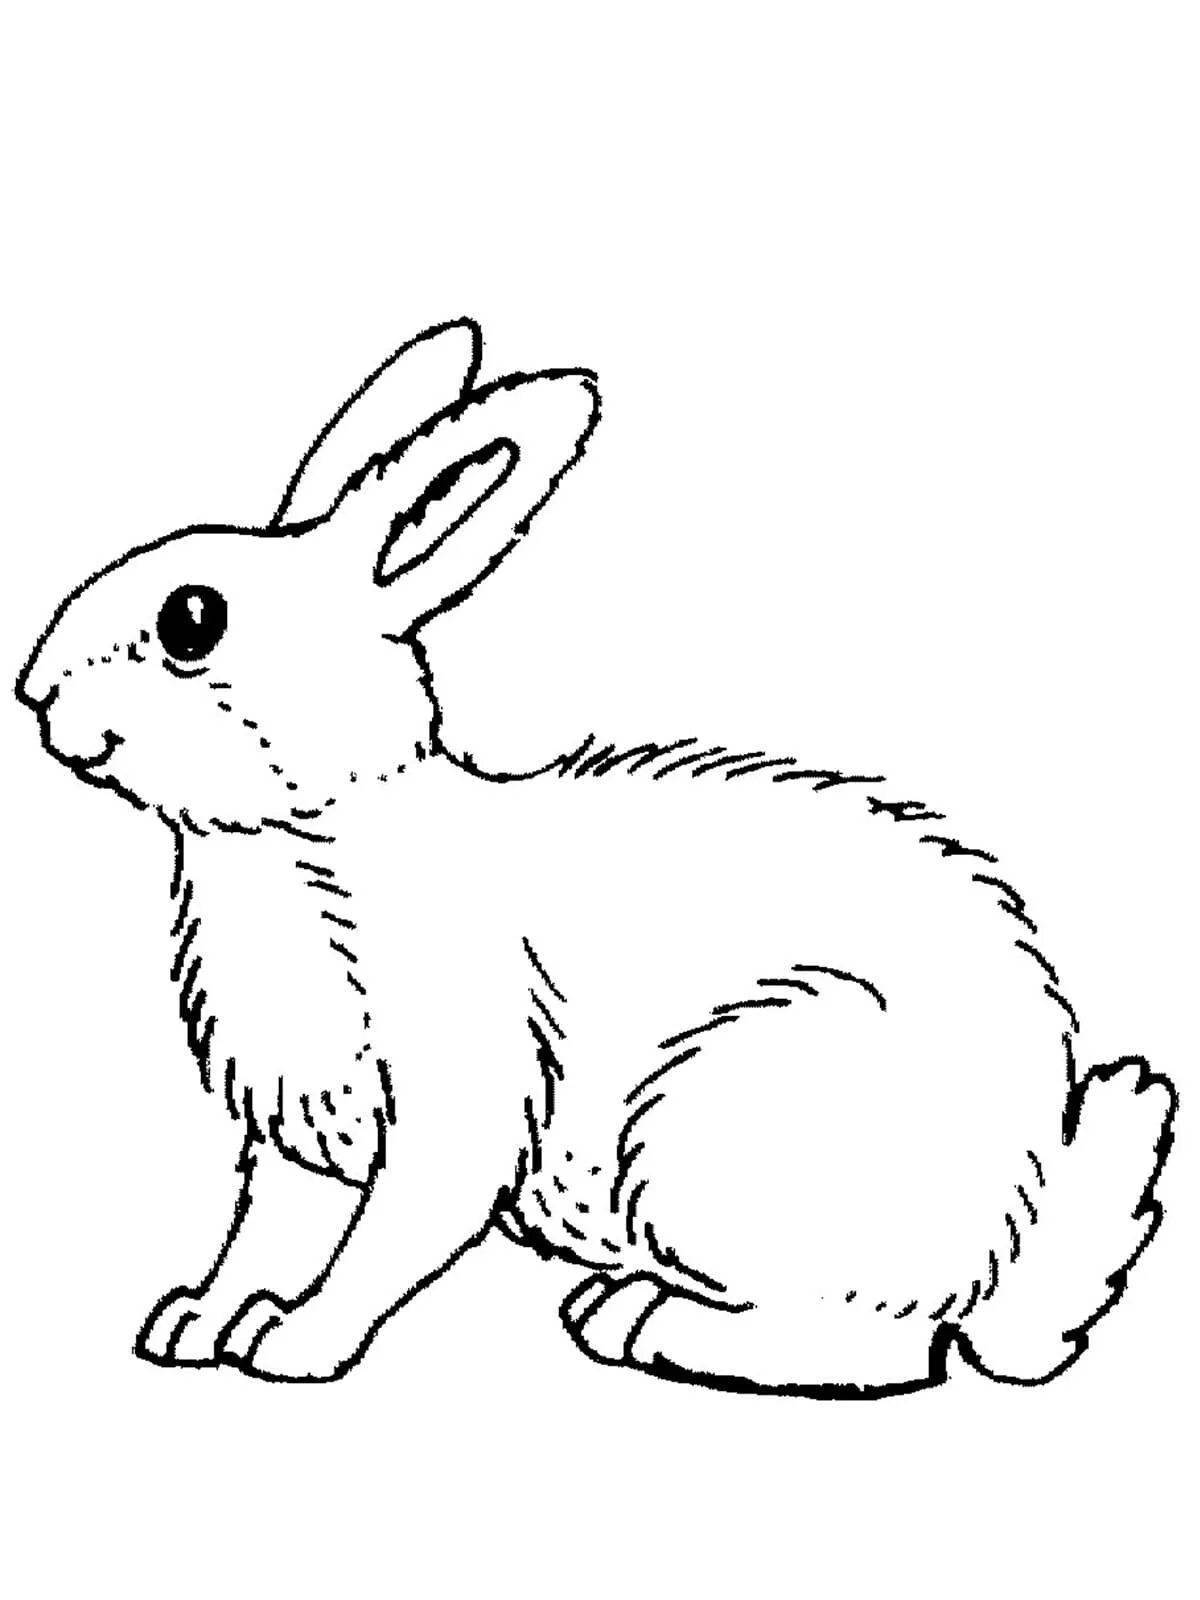 Славный заяц раскраски для детей